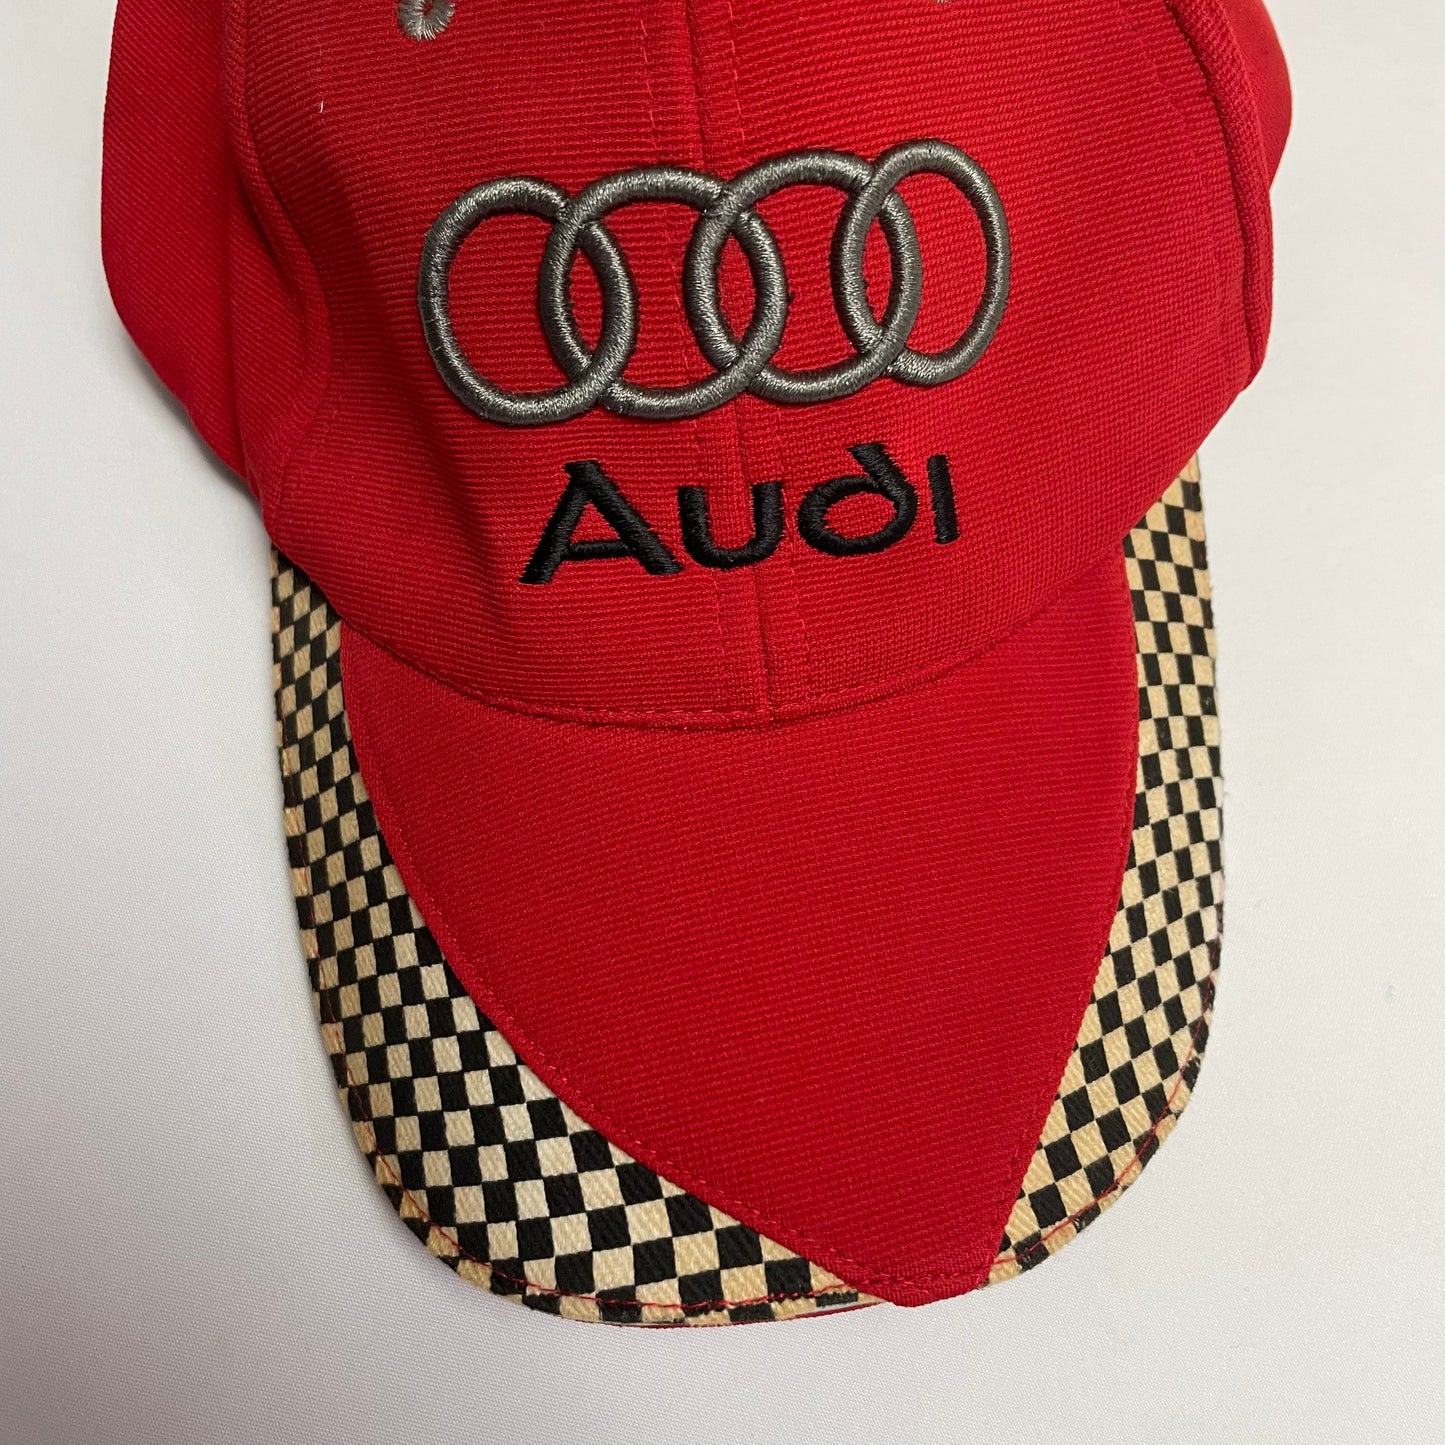 Audi Cap